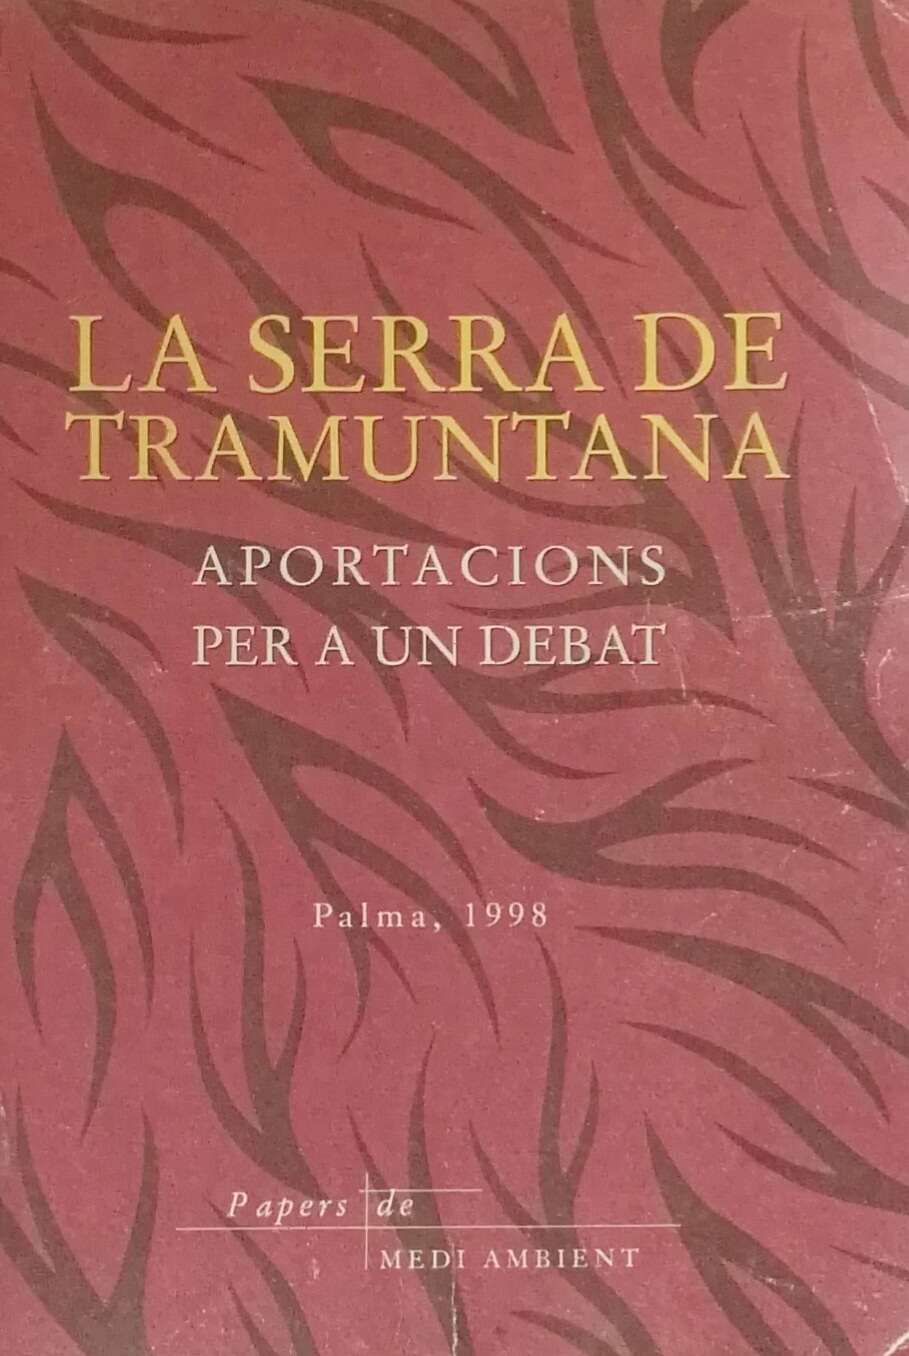 Imagen de portada del libro La Serra de Tramuntana